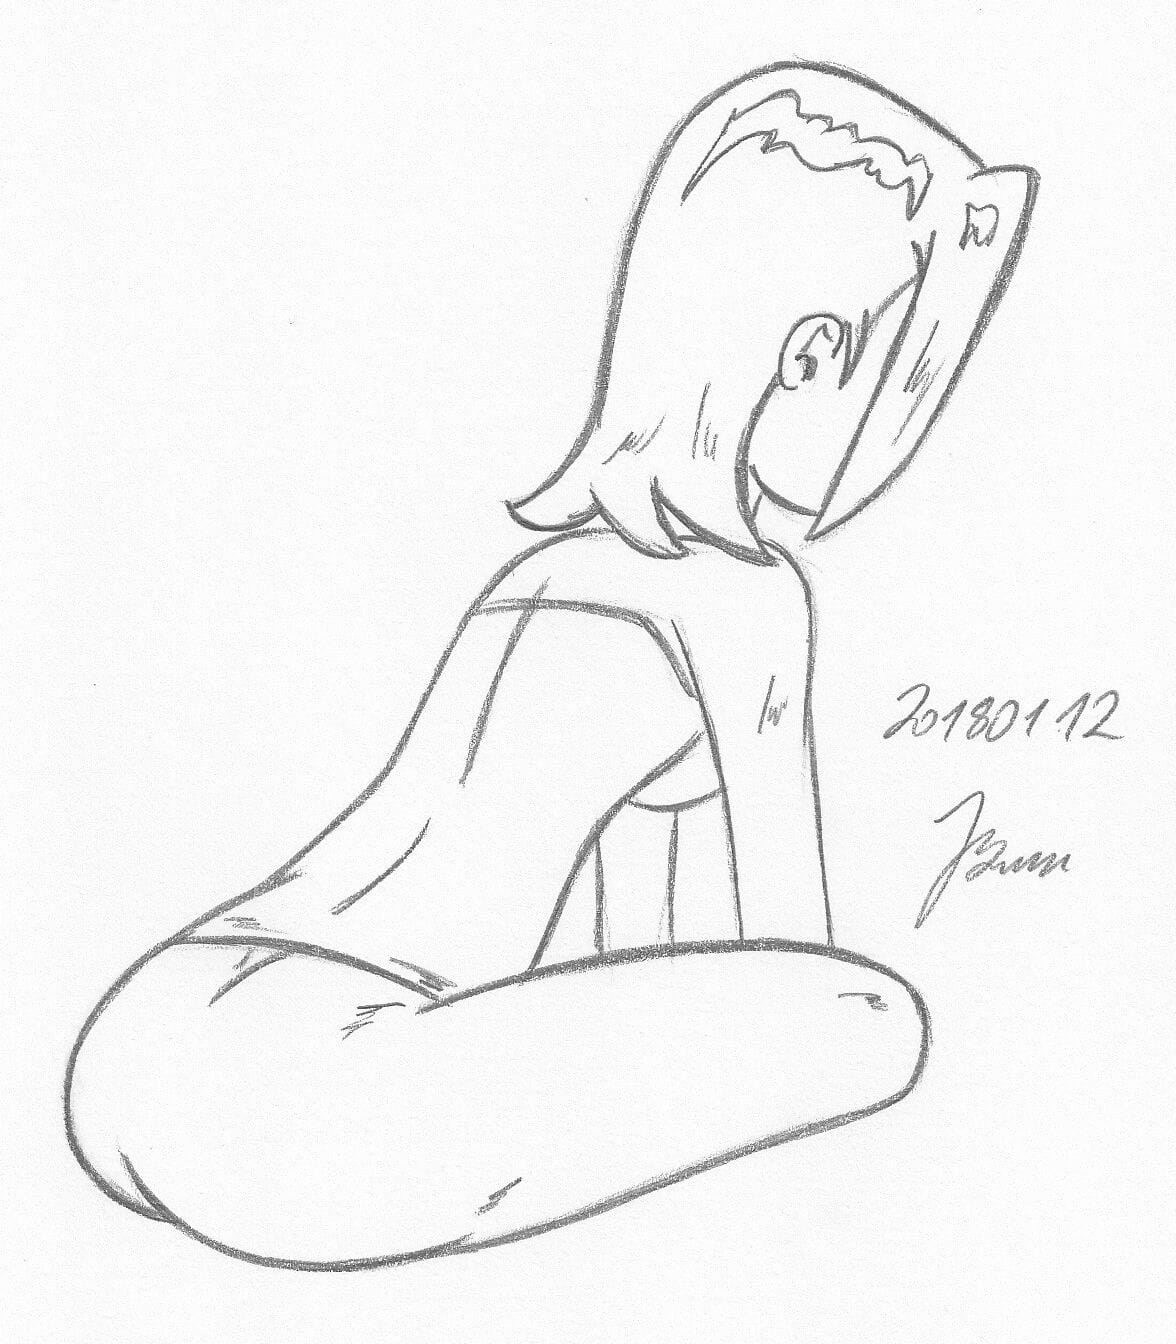 Gwen tennyson_ ben10_my miny çizimler work_5 PART 2 page 1